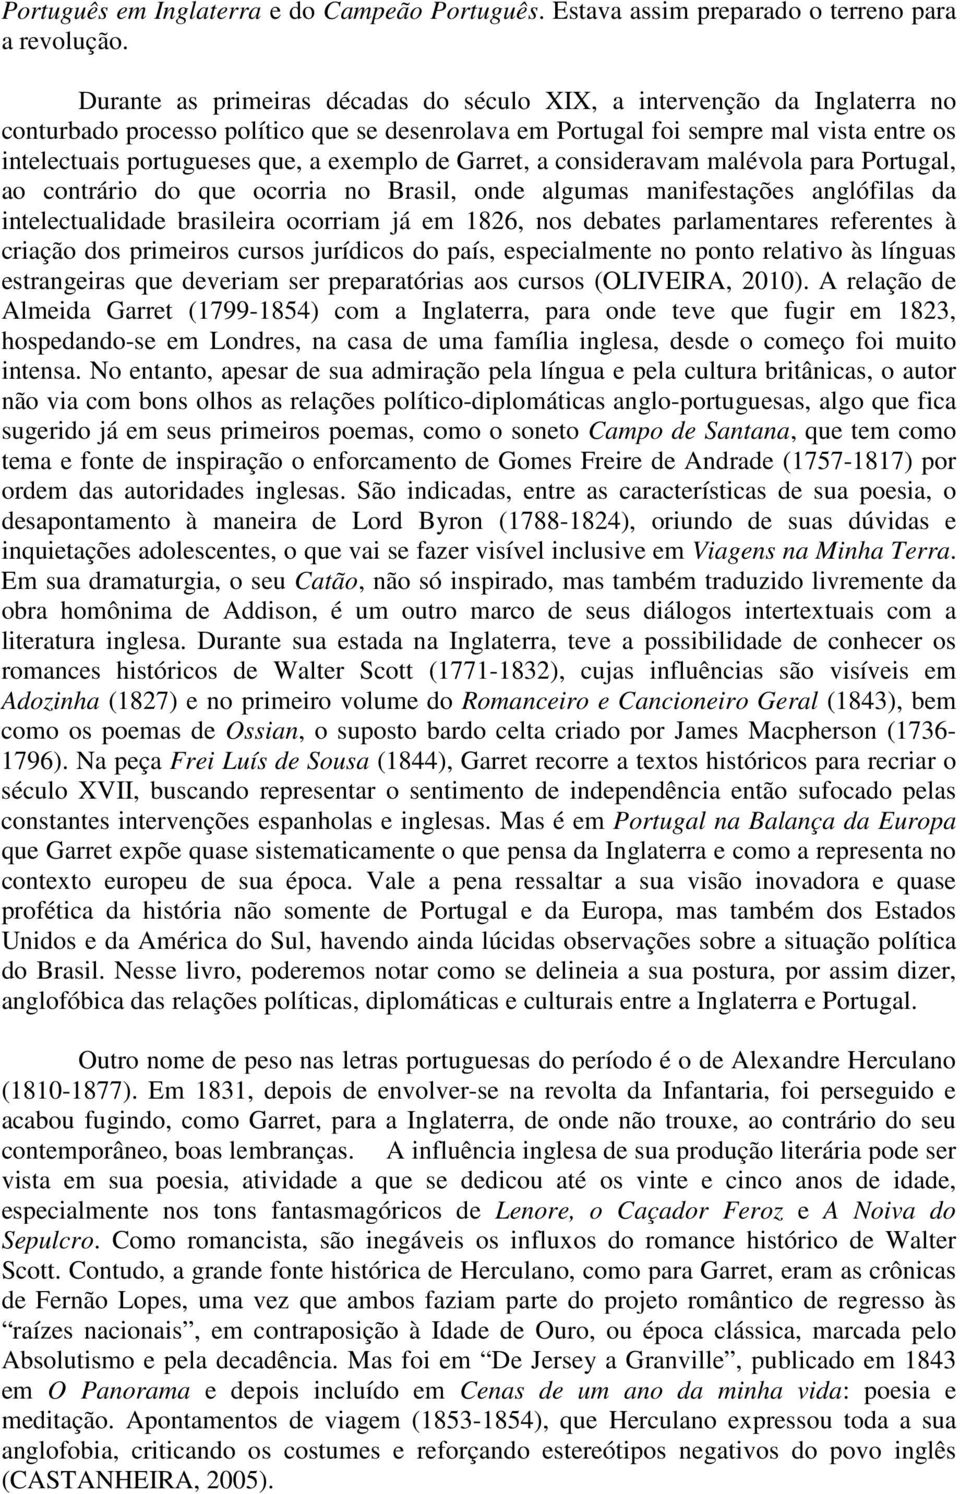 exemplo de Garret, a consideravam malévola para Portugal, ao contrário do que ocorria no Brasil, onde algumas manifestações anglófilas da intelectualidade brasileira ocorriam já em 1826, nos debates